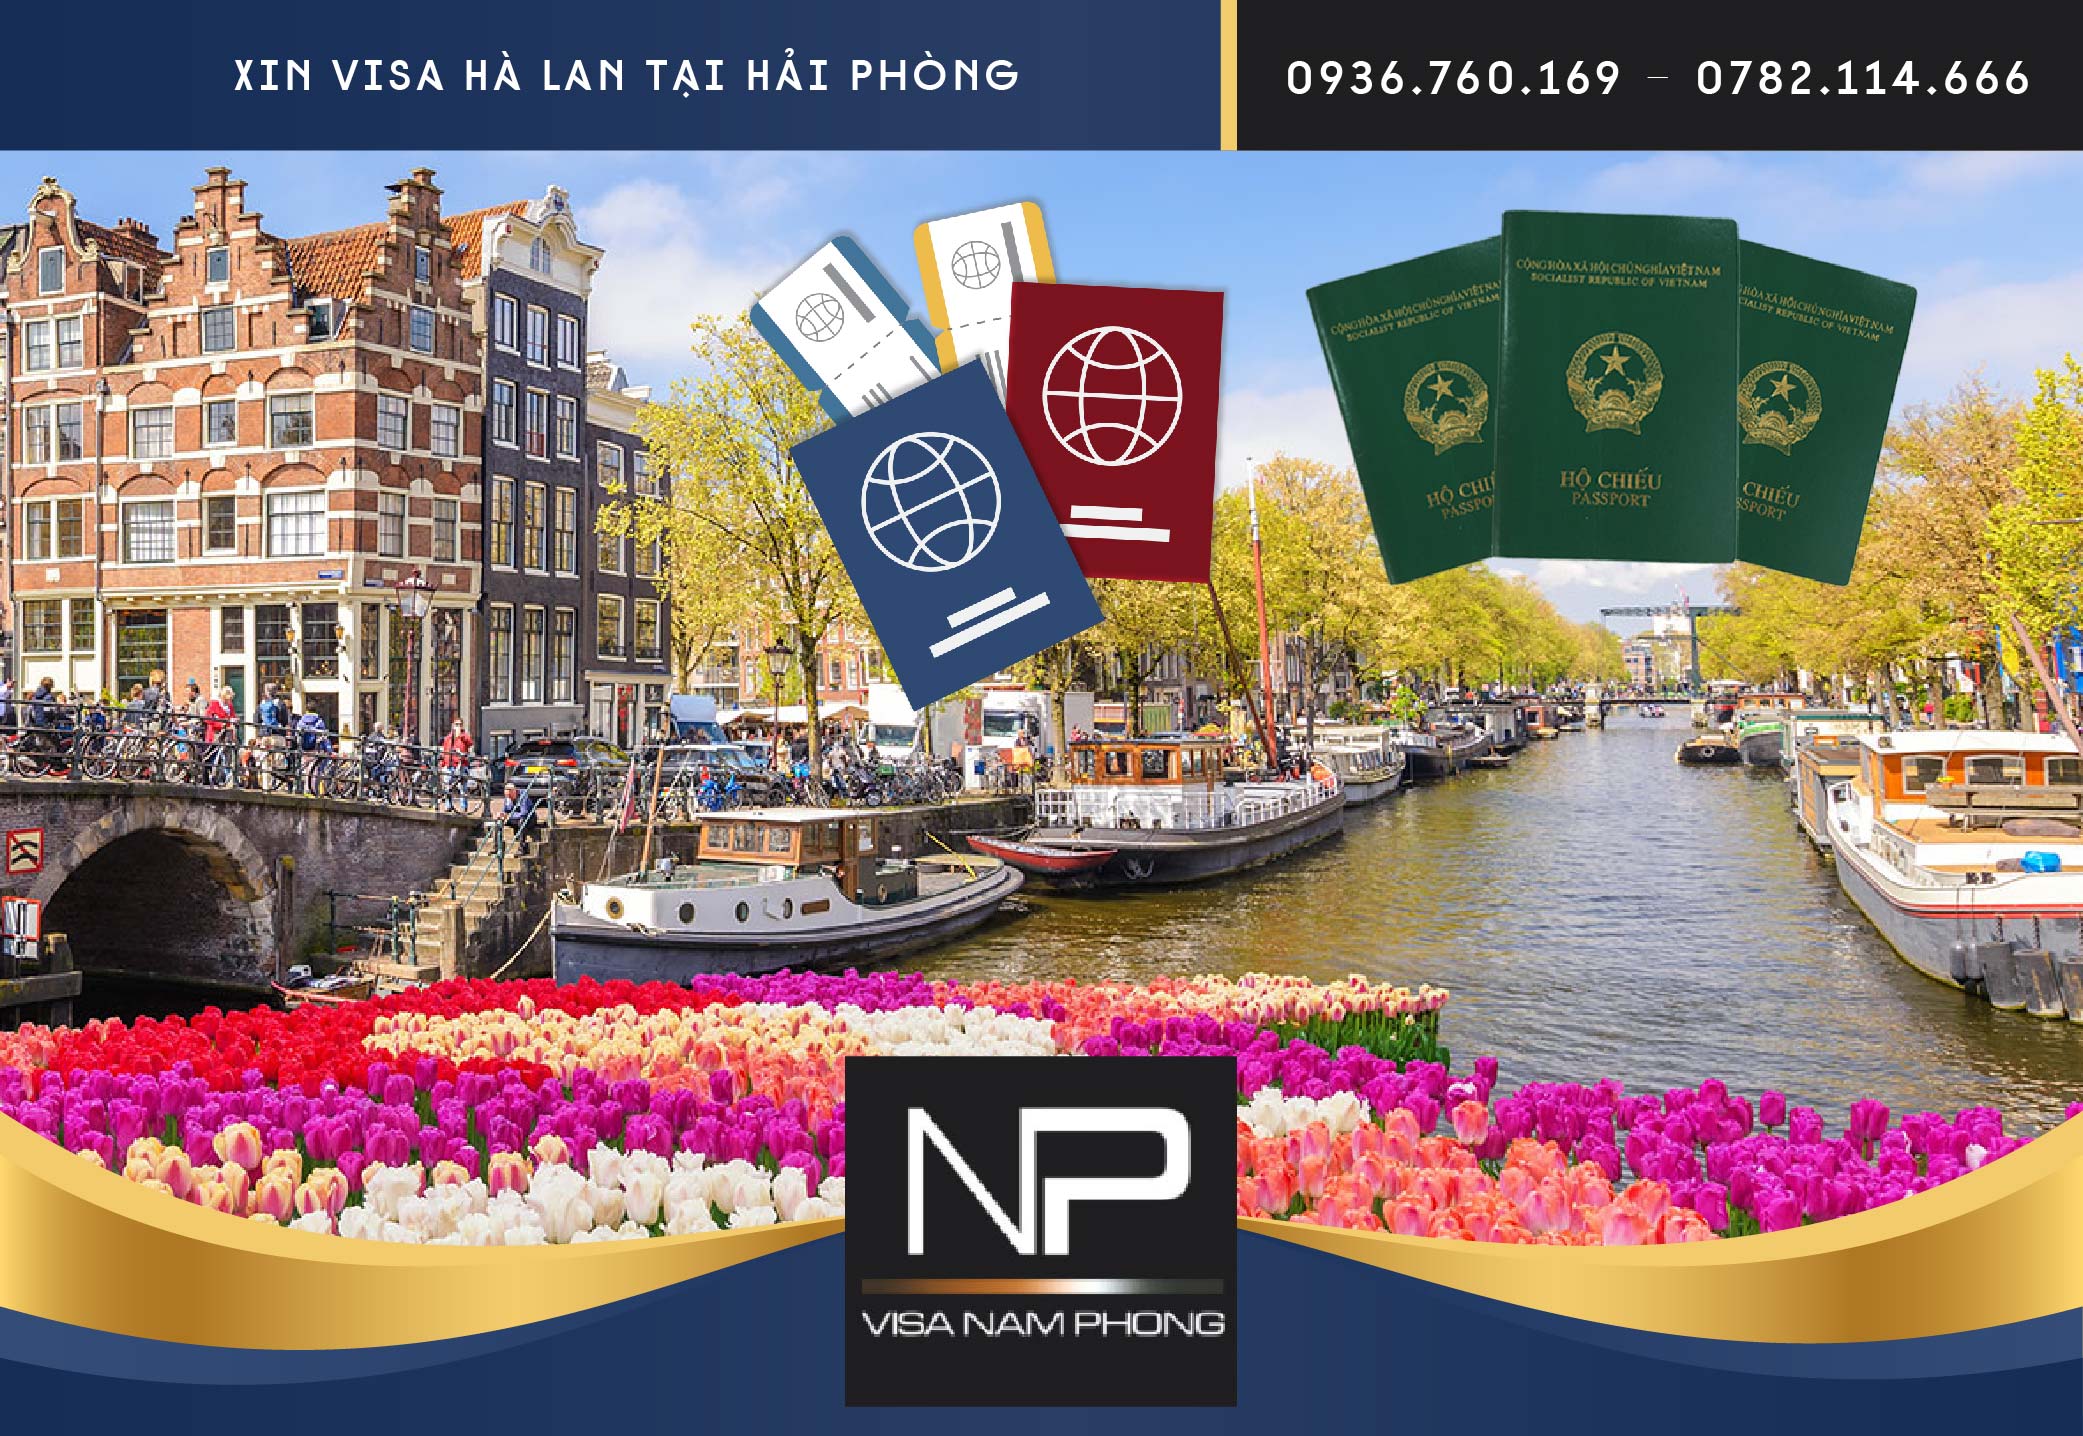 Xin visa Hà Lan tại Hải Phòng